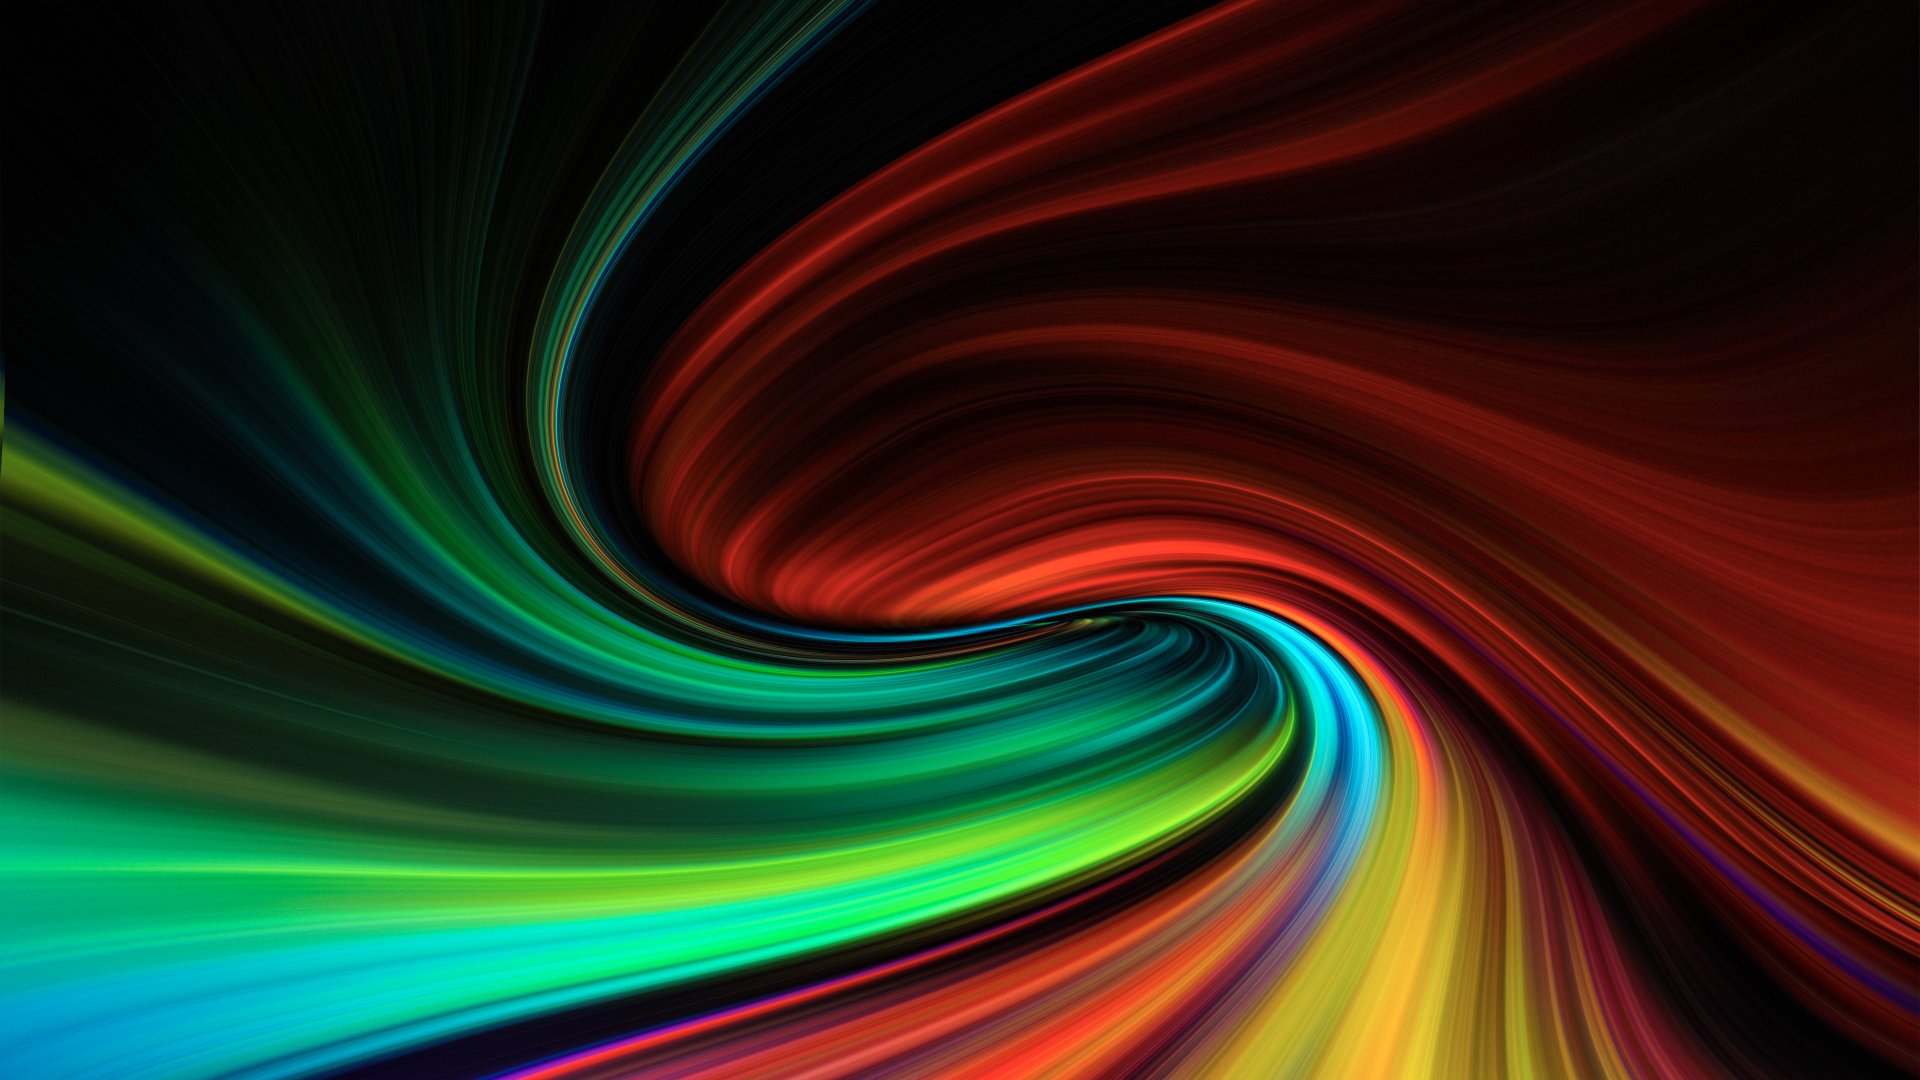 Abstract Swirl 8k Ultra HD Wallpaper by Hk3ToN